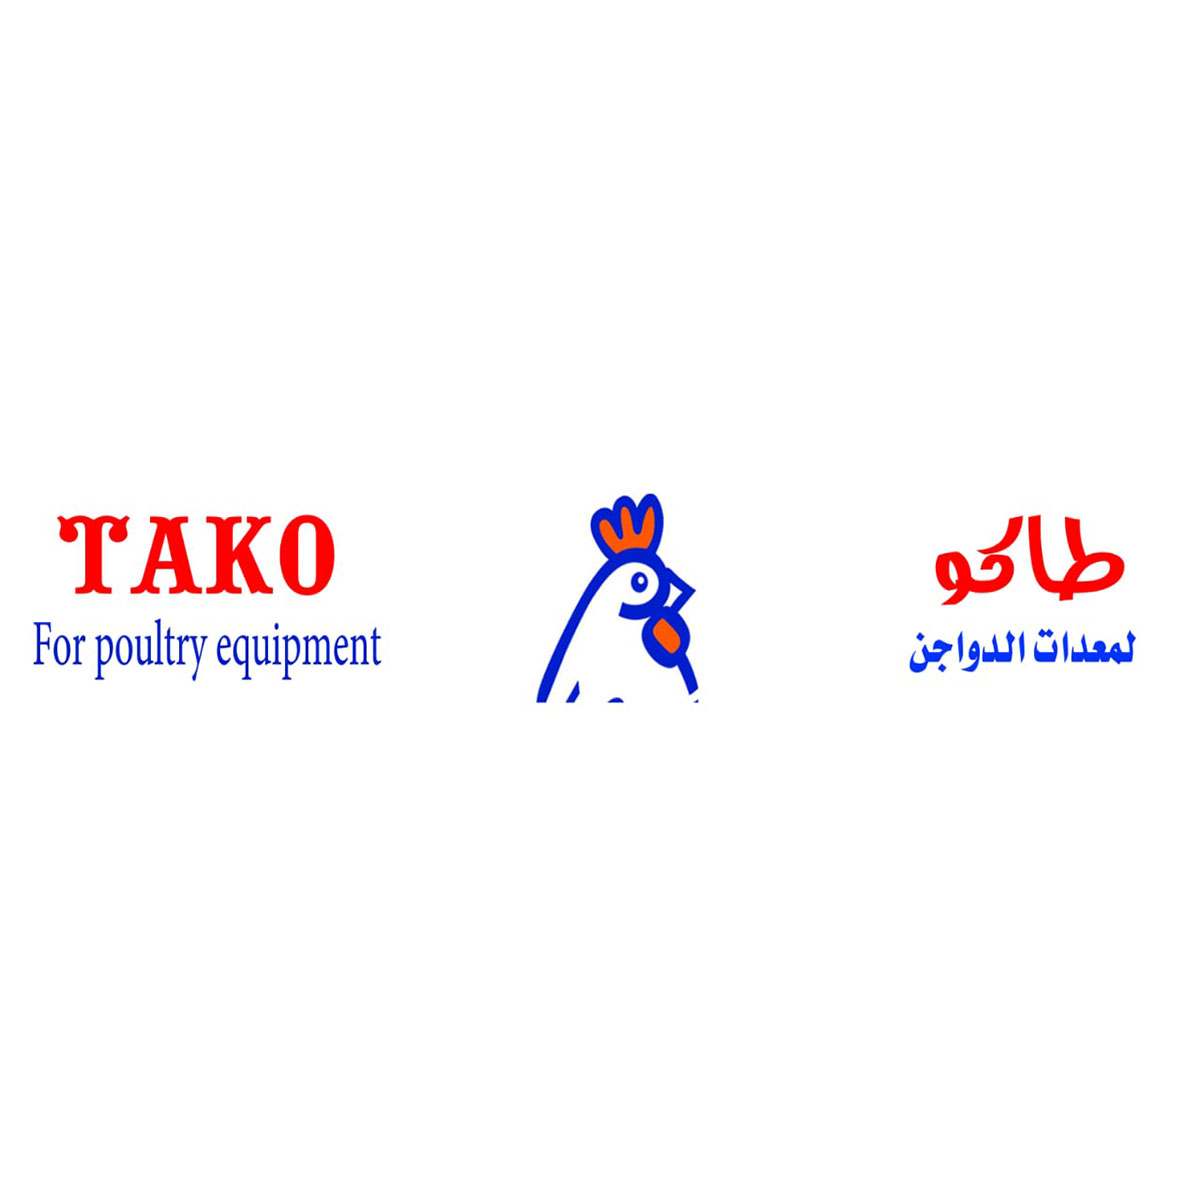 شركات تجهيزات مزارع : شركة طاكو لمعدات الدواجن - TAKO